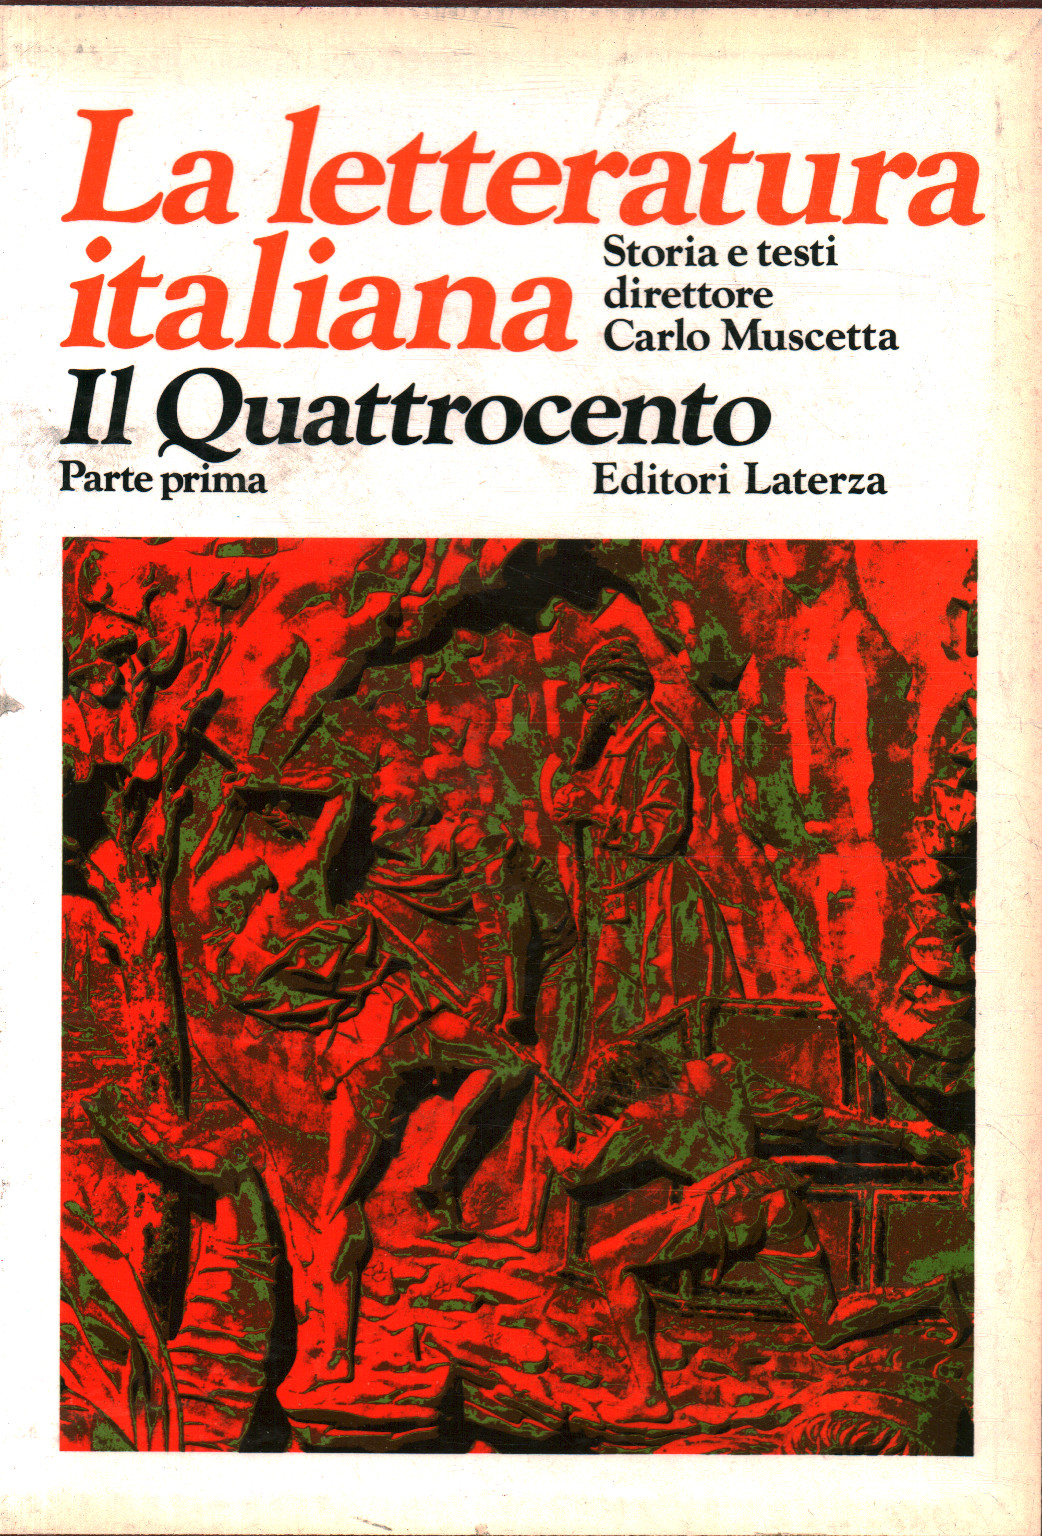 Italienische Literatur Geschichte und Texte. Die Vier, Achille Tartaro Francesco Tateo